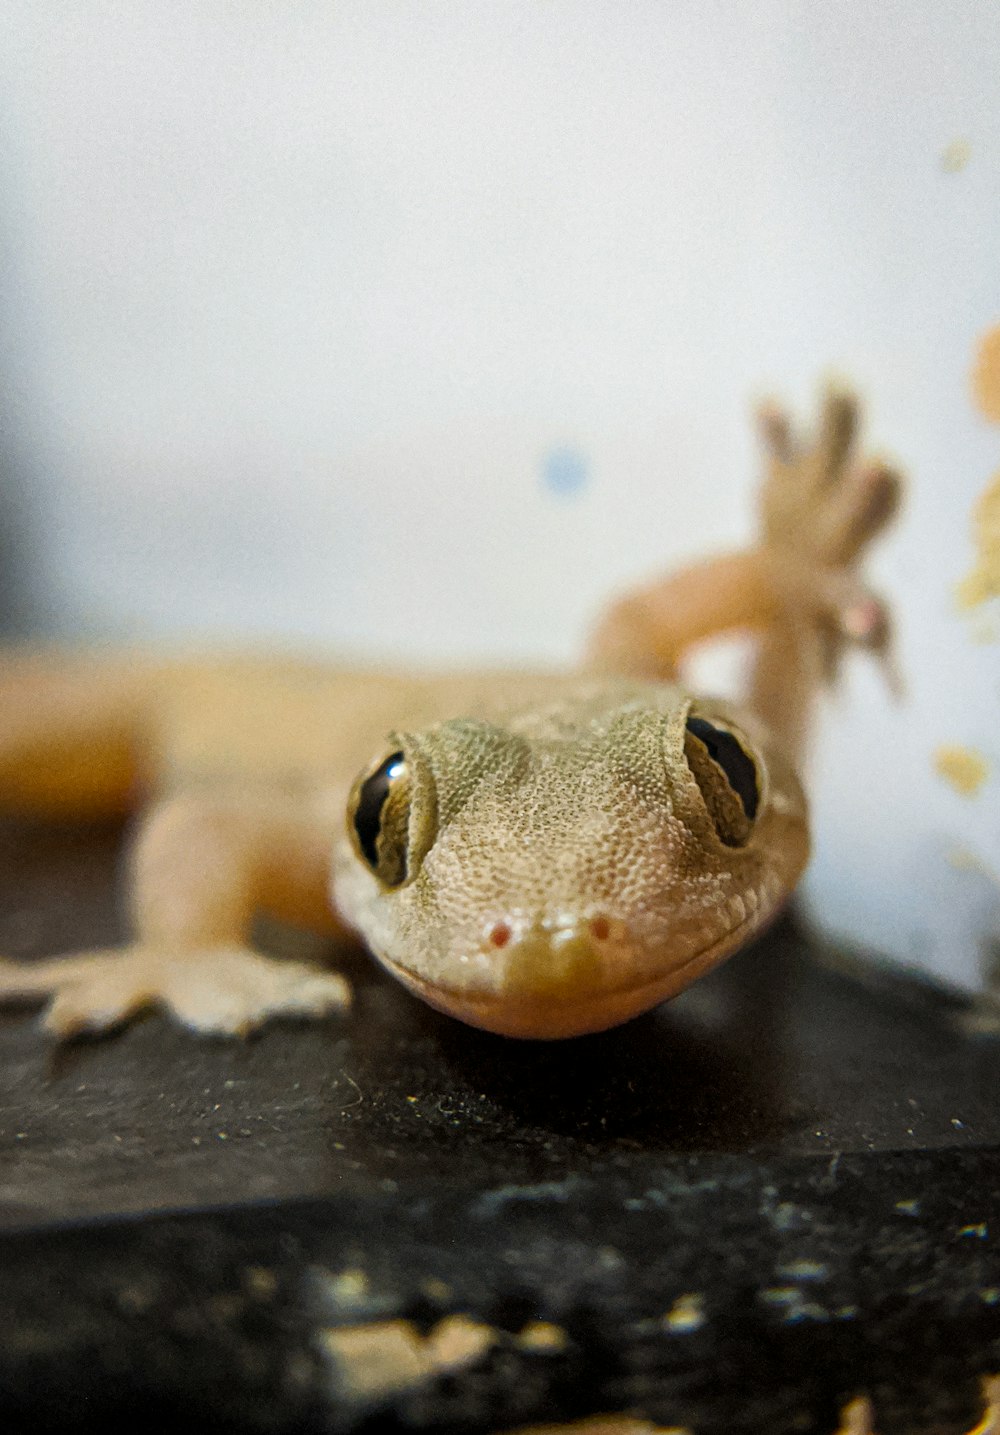 macro photography of yellow gecko